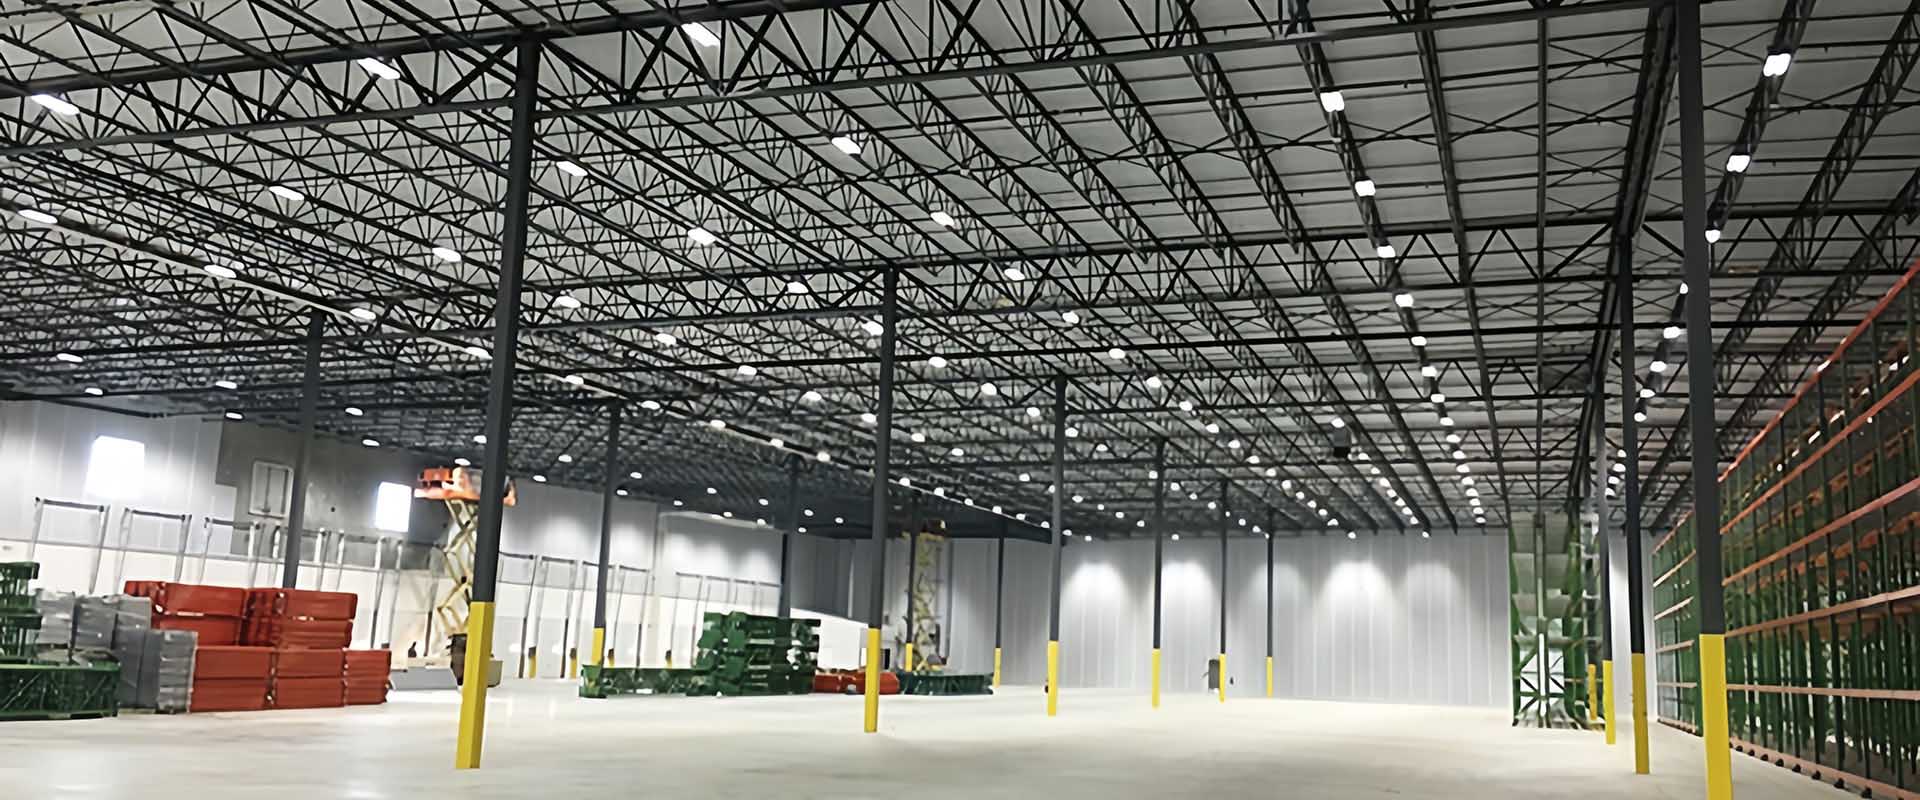 LED linear light for warehouse